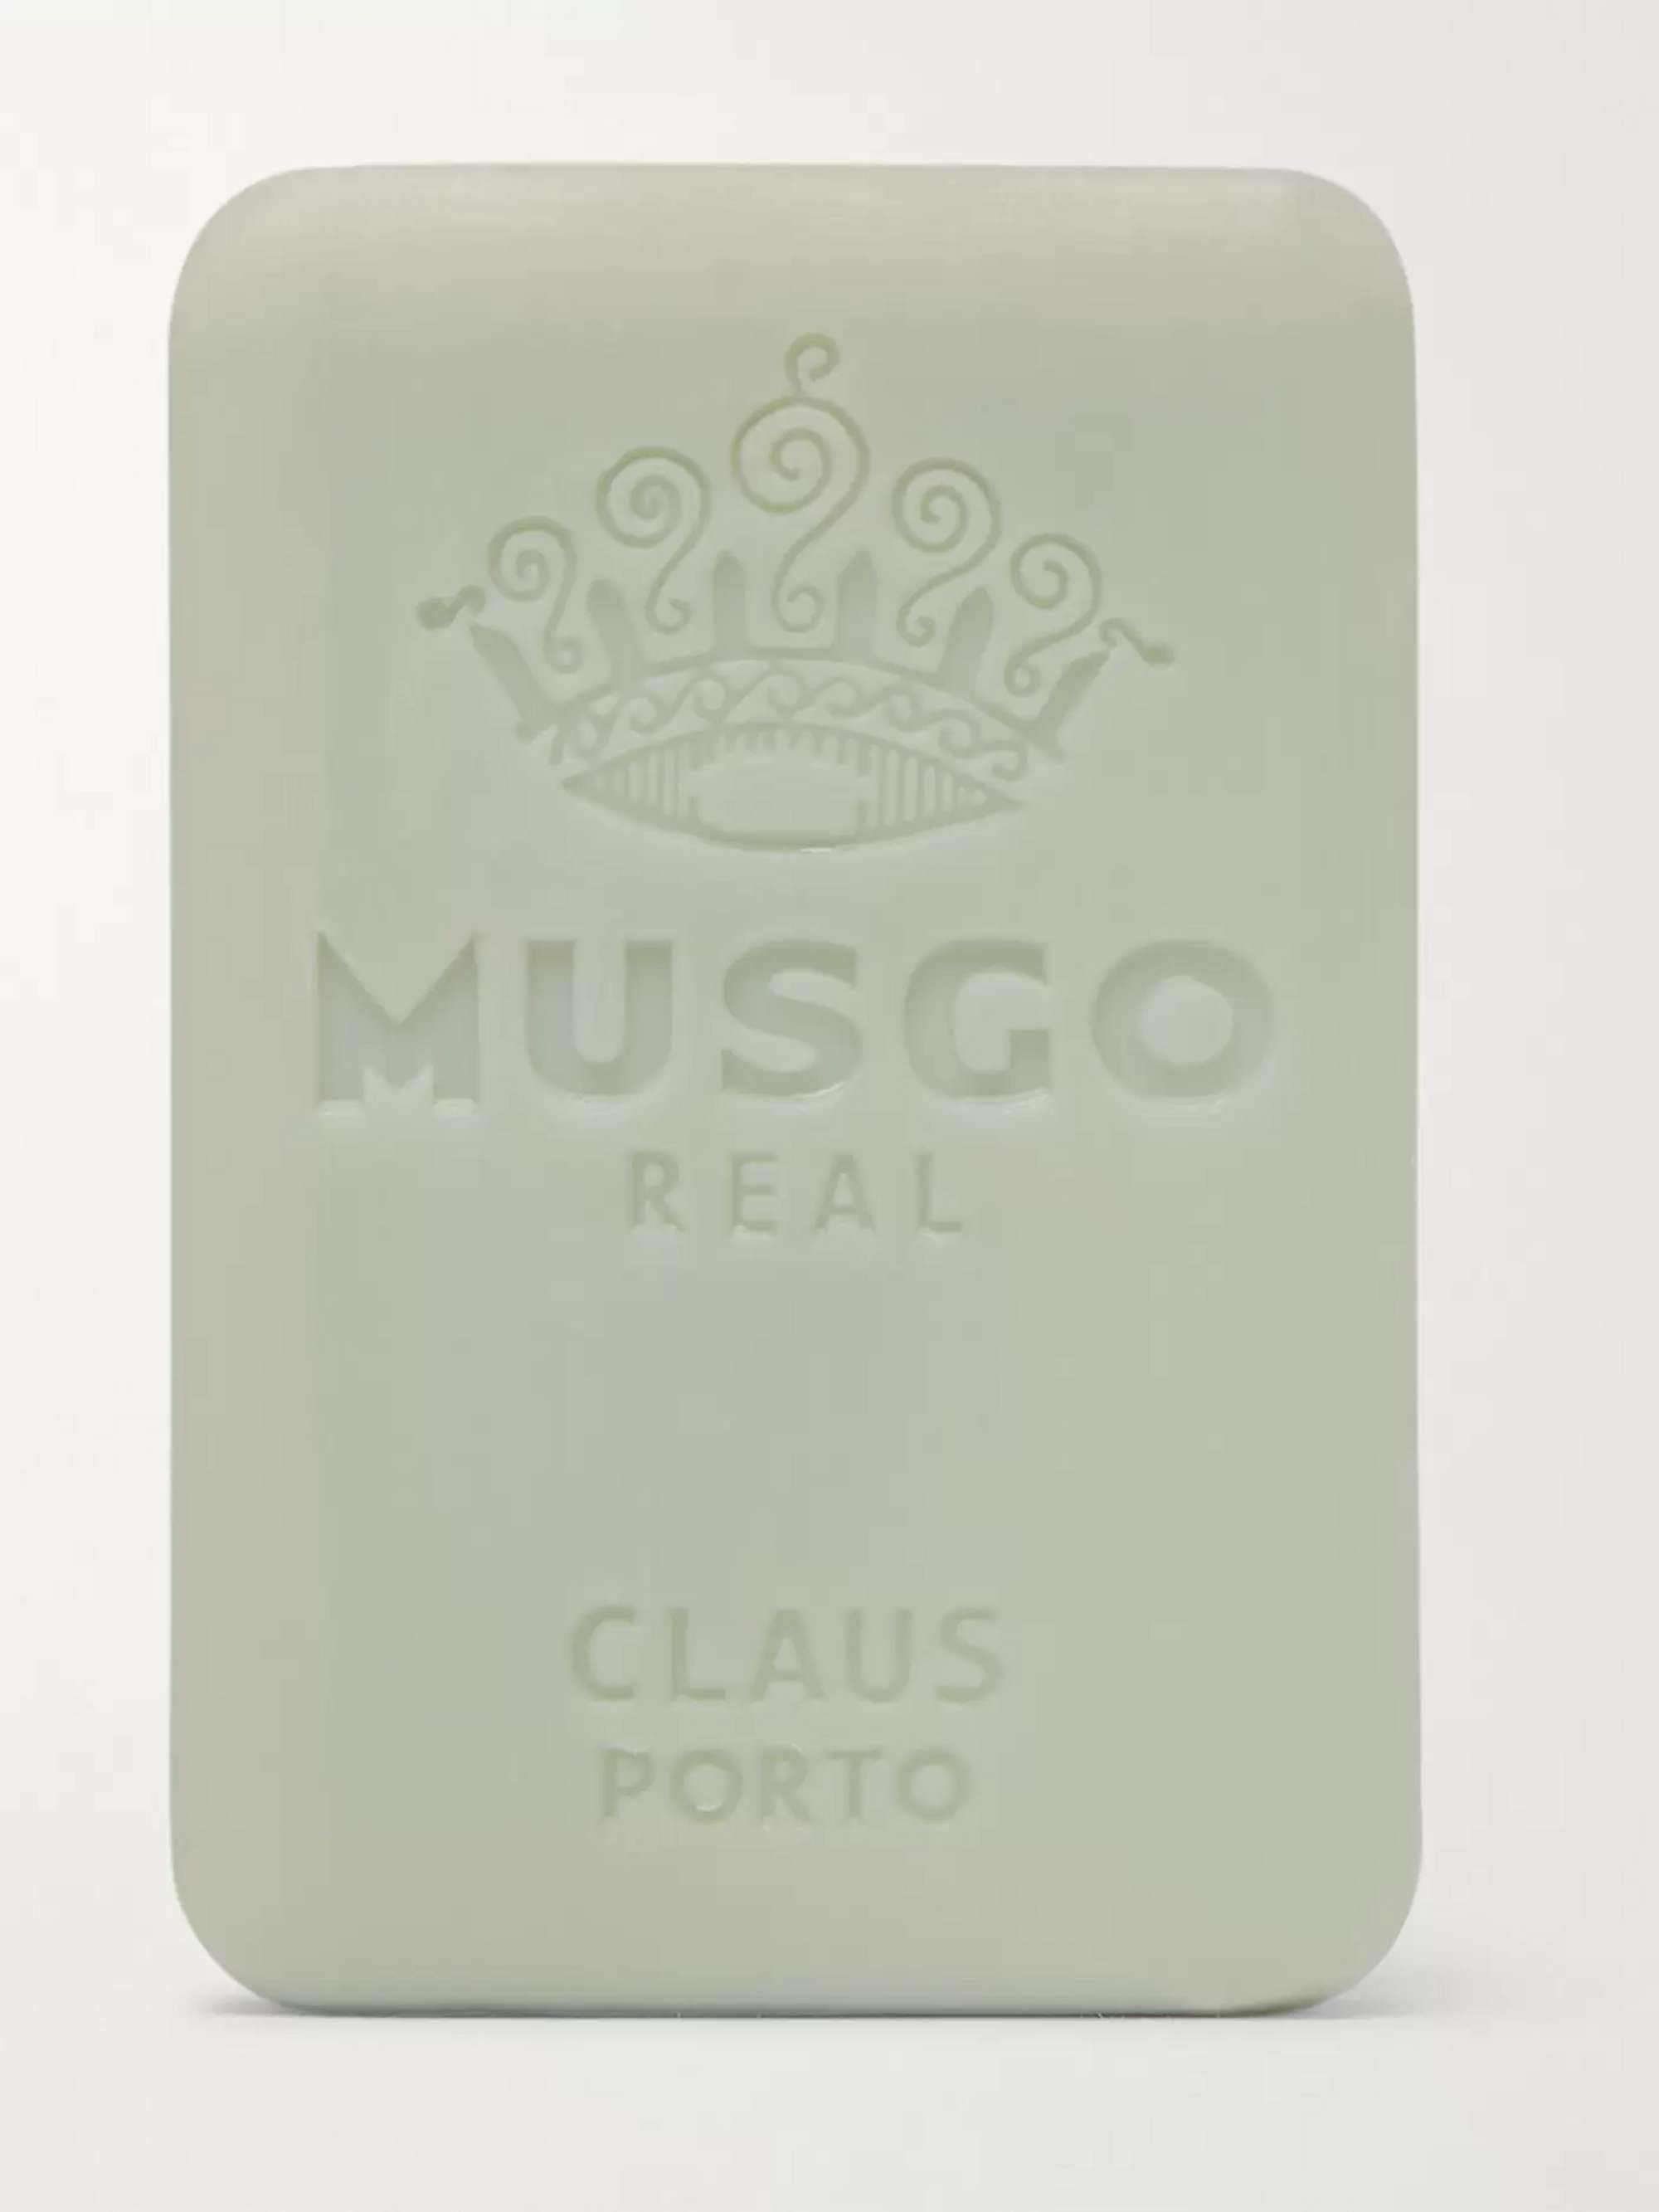 CLAUS PORTO Classic Scent Soap, 160g